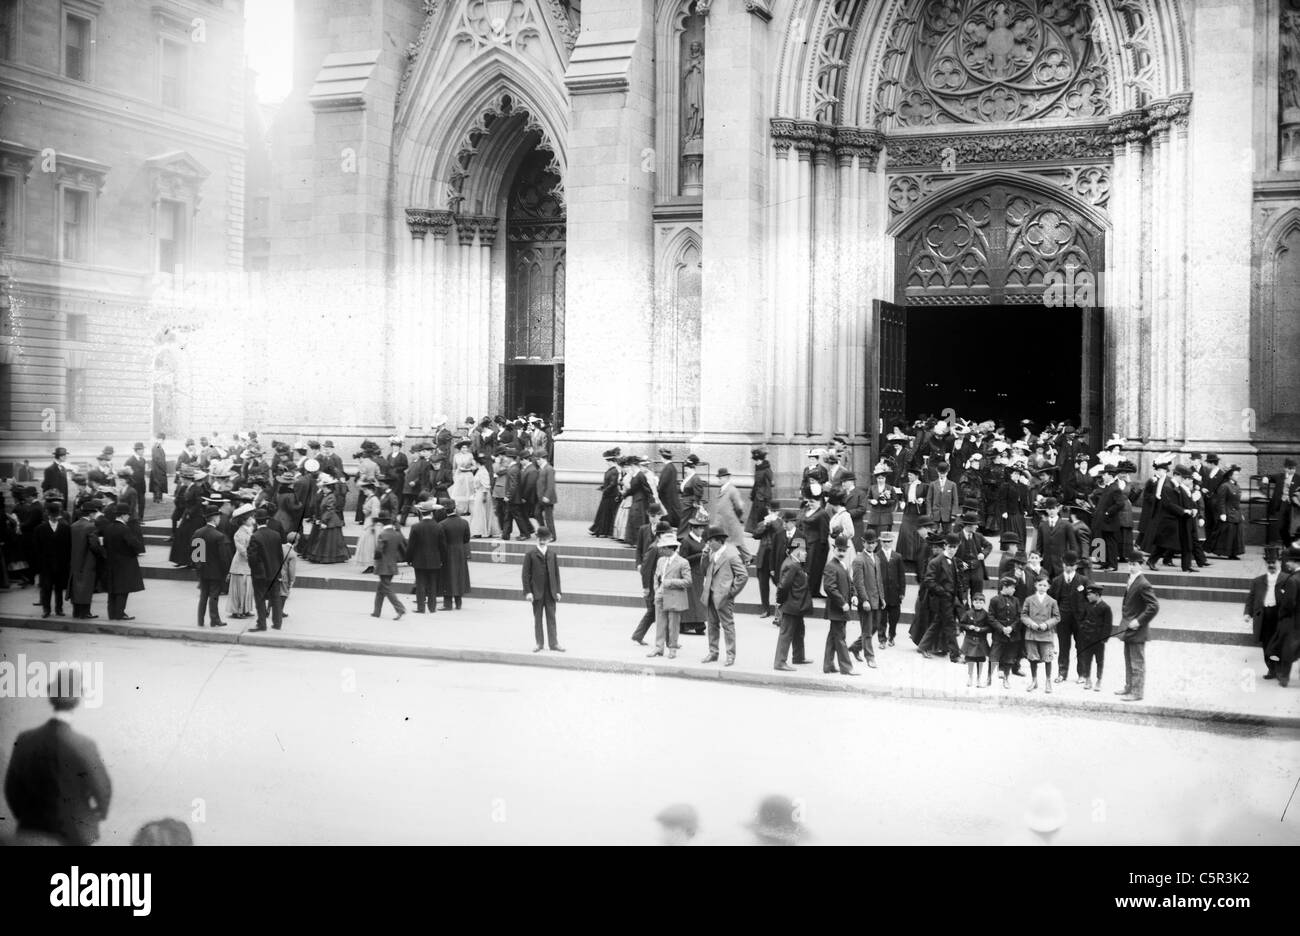 Saliendo de la Catedral de San Patricio, después de Pascua, Servicio 5th Avenue, New York City, circa 1900 Foto de stock